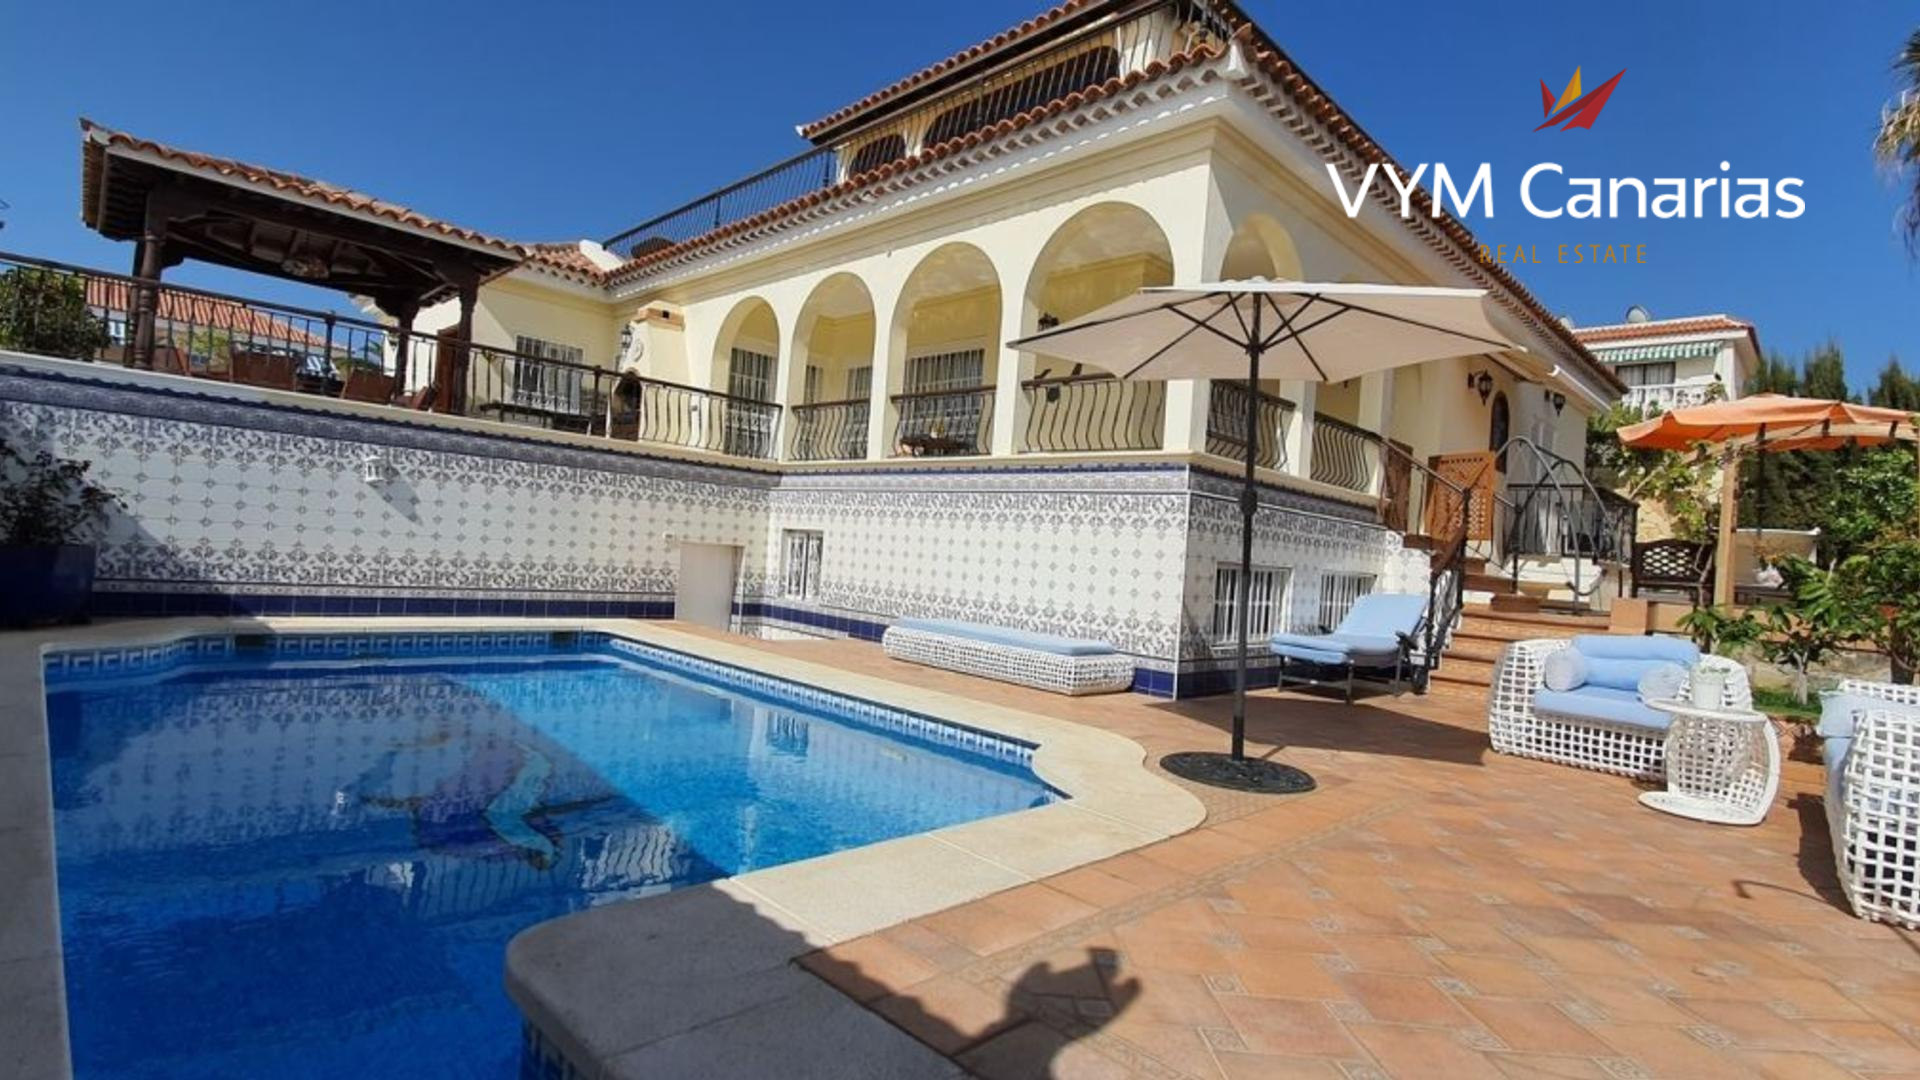 Villa in Callao Salvaje marketed by Vym Canarias